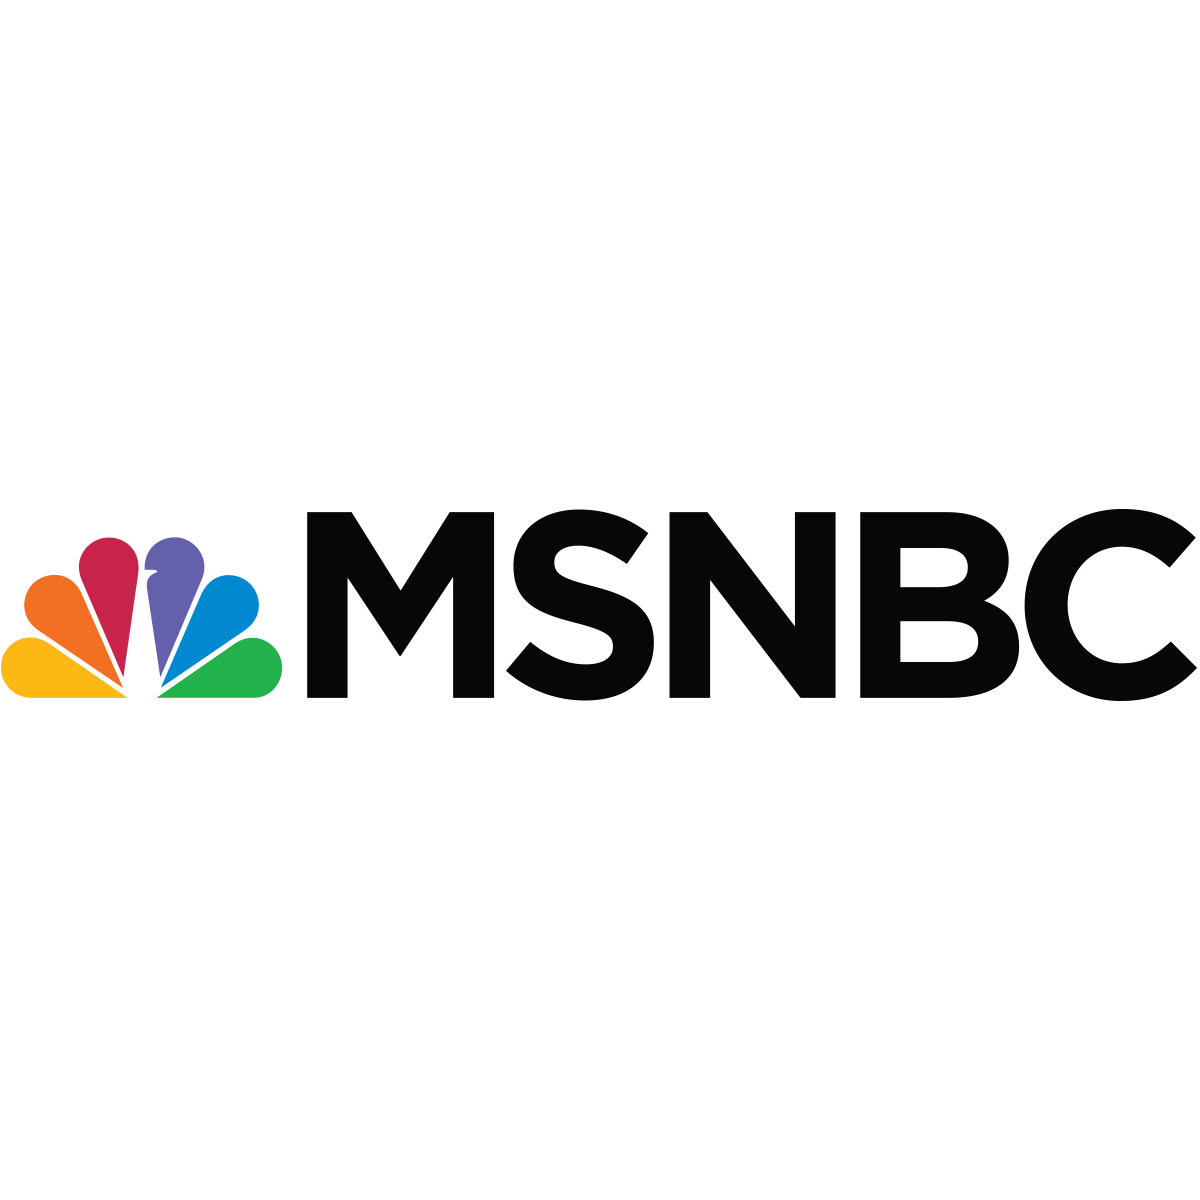 MSNBC News Logo LogoDix